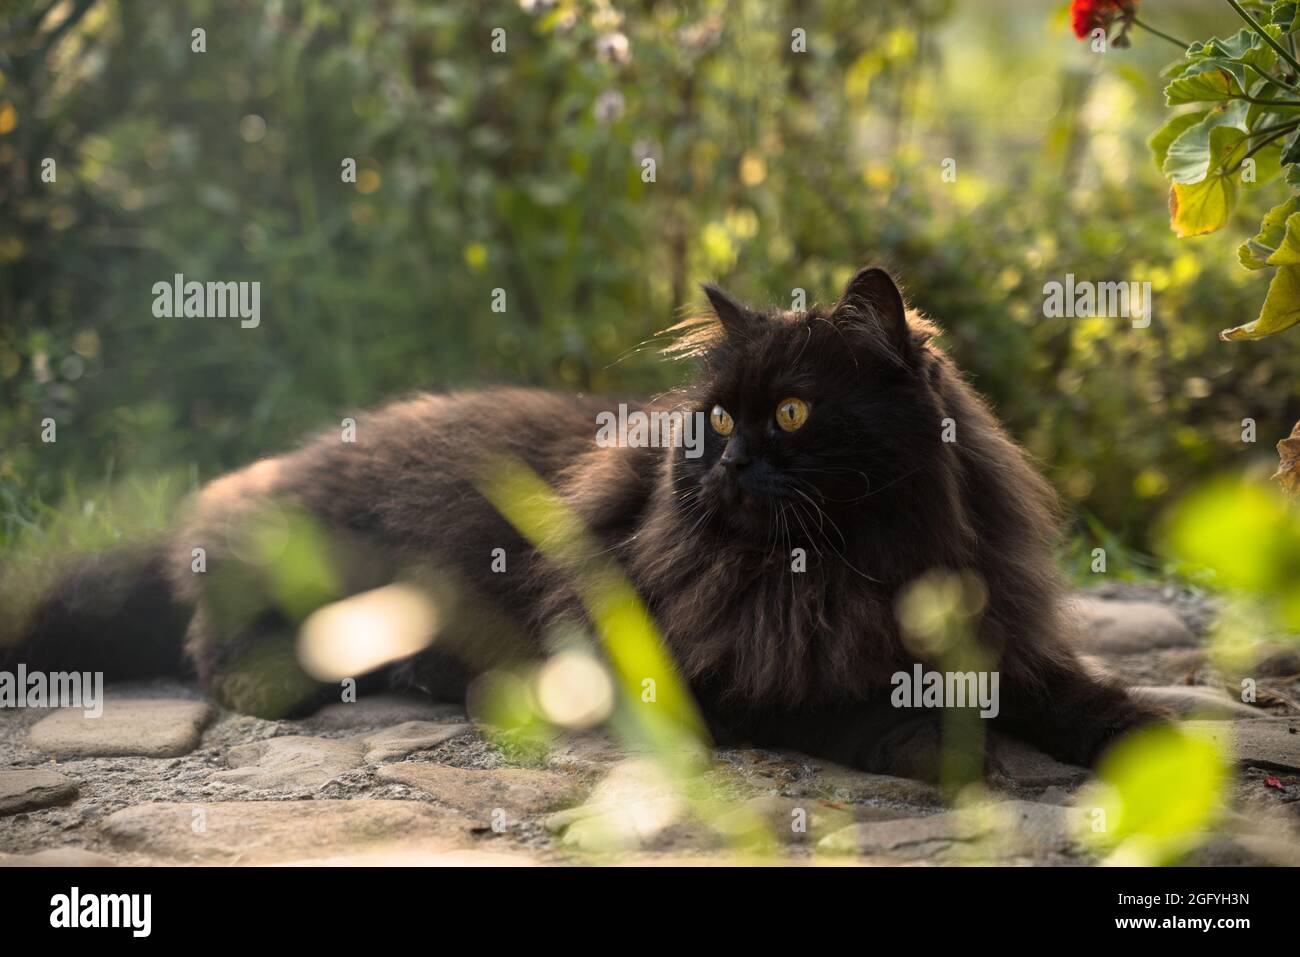 Black Persian cat sitting outdoor in garden Stock Photo